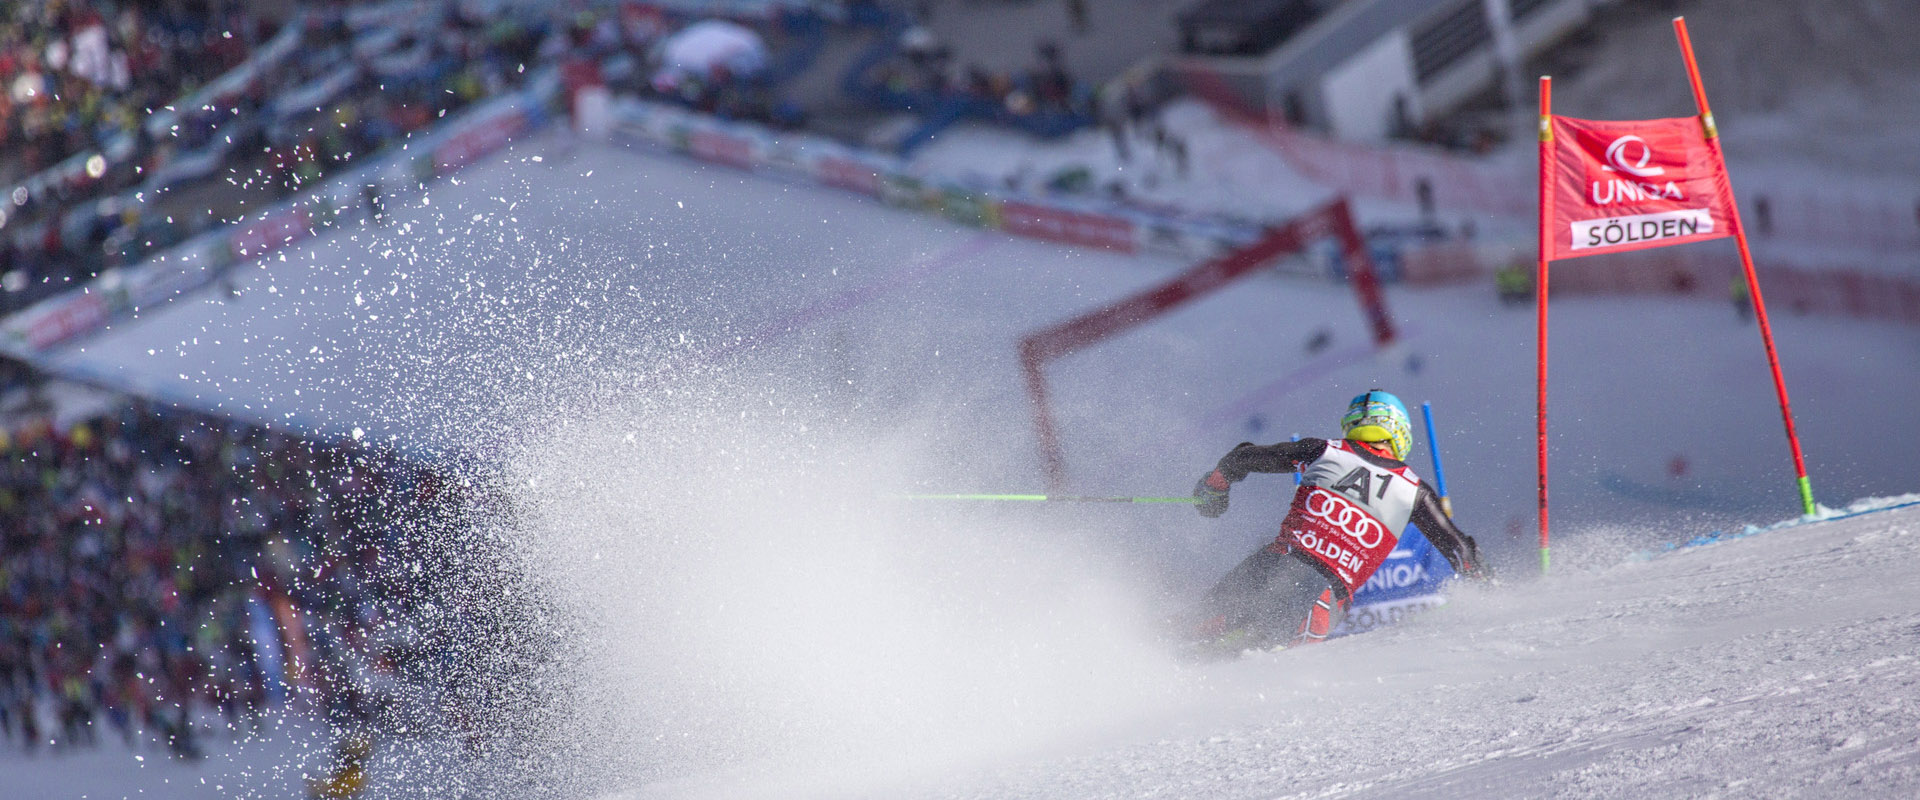 Alpiner Skiweltcup 2019 2020